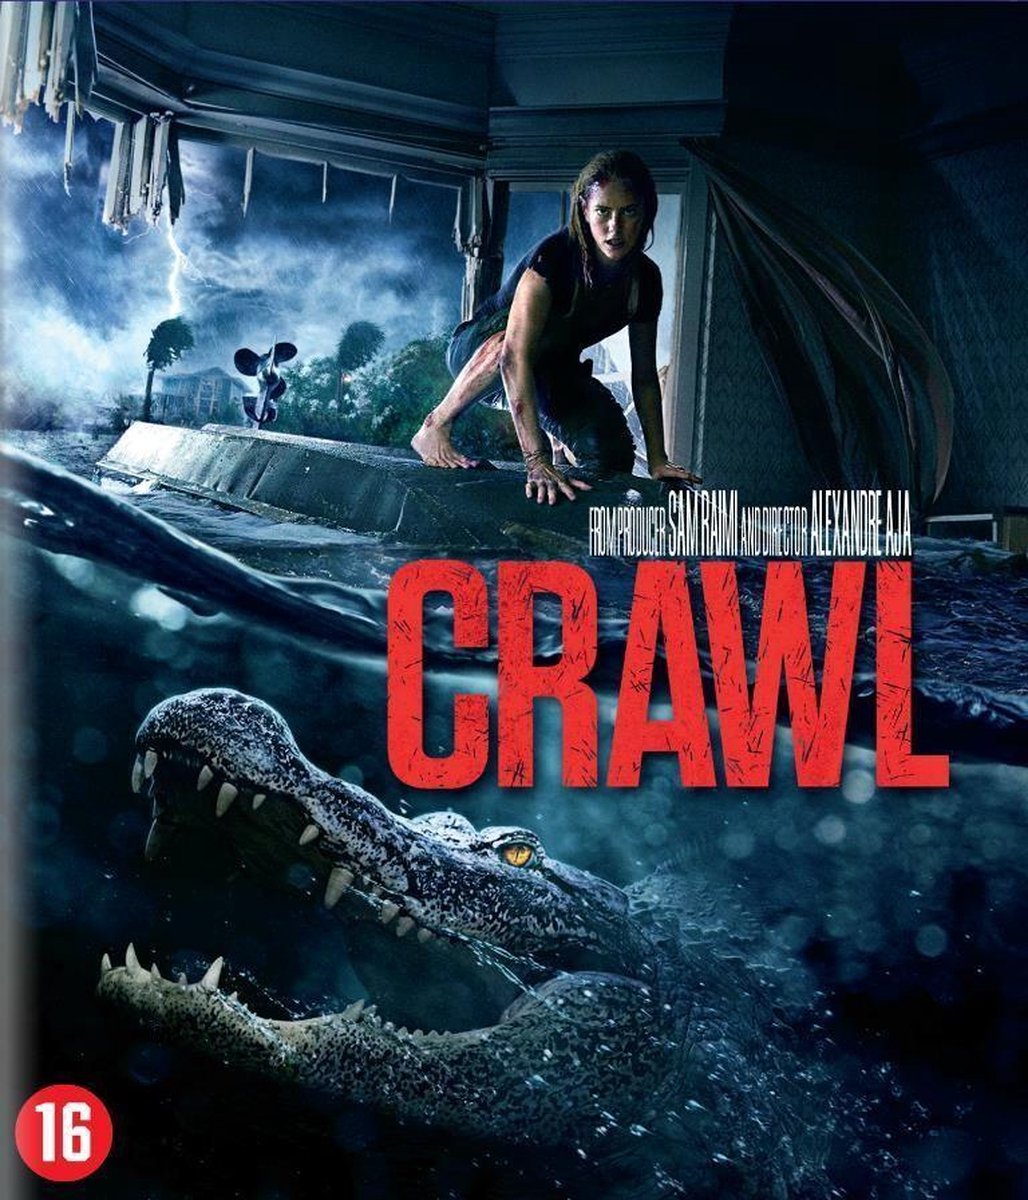 Crawl (Blu-ray) - Dutch Film Works